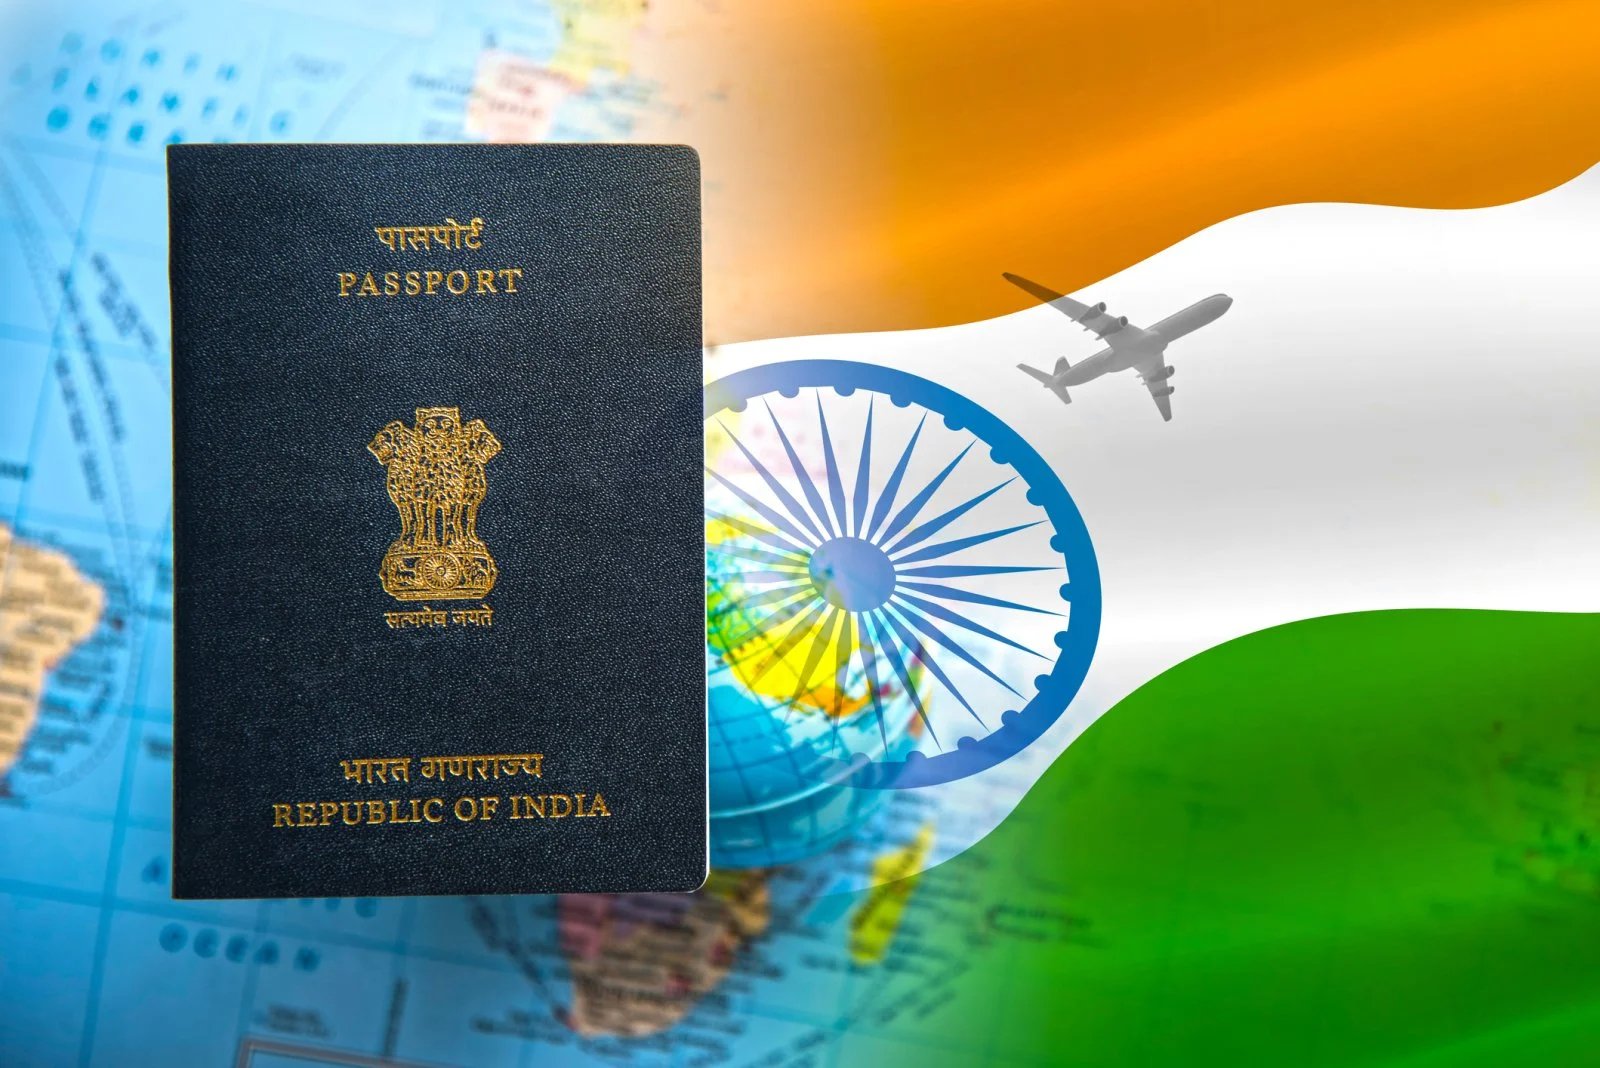 दुनिया के सबसे शक्तिशाली पासपोर्ट की सूची में भारत 80वें स्थान पर